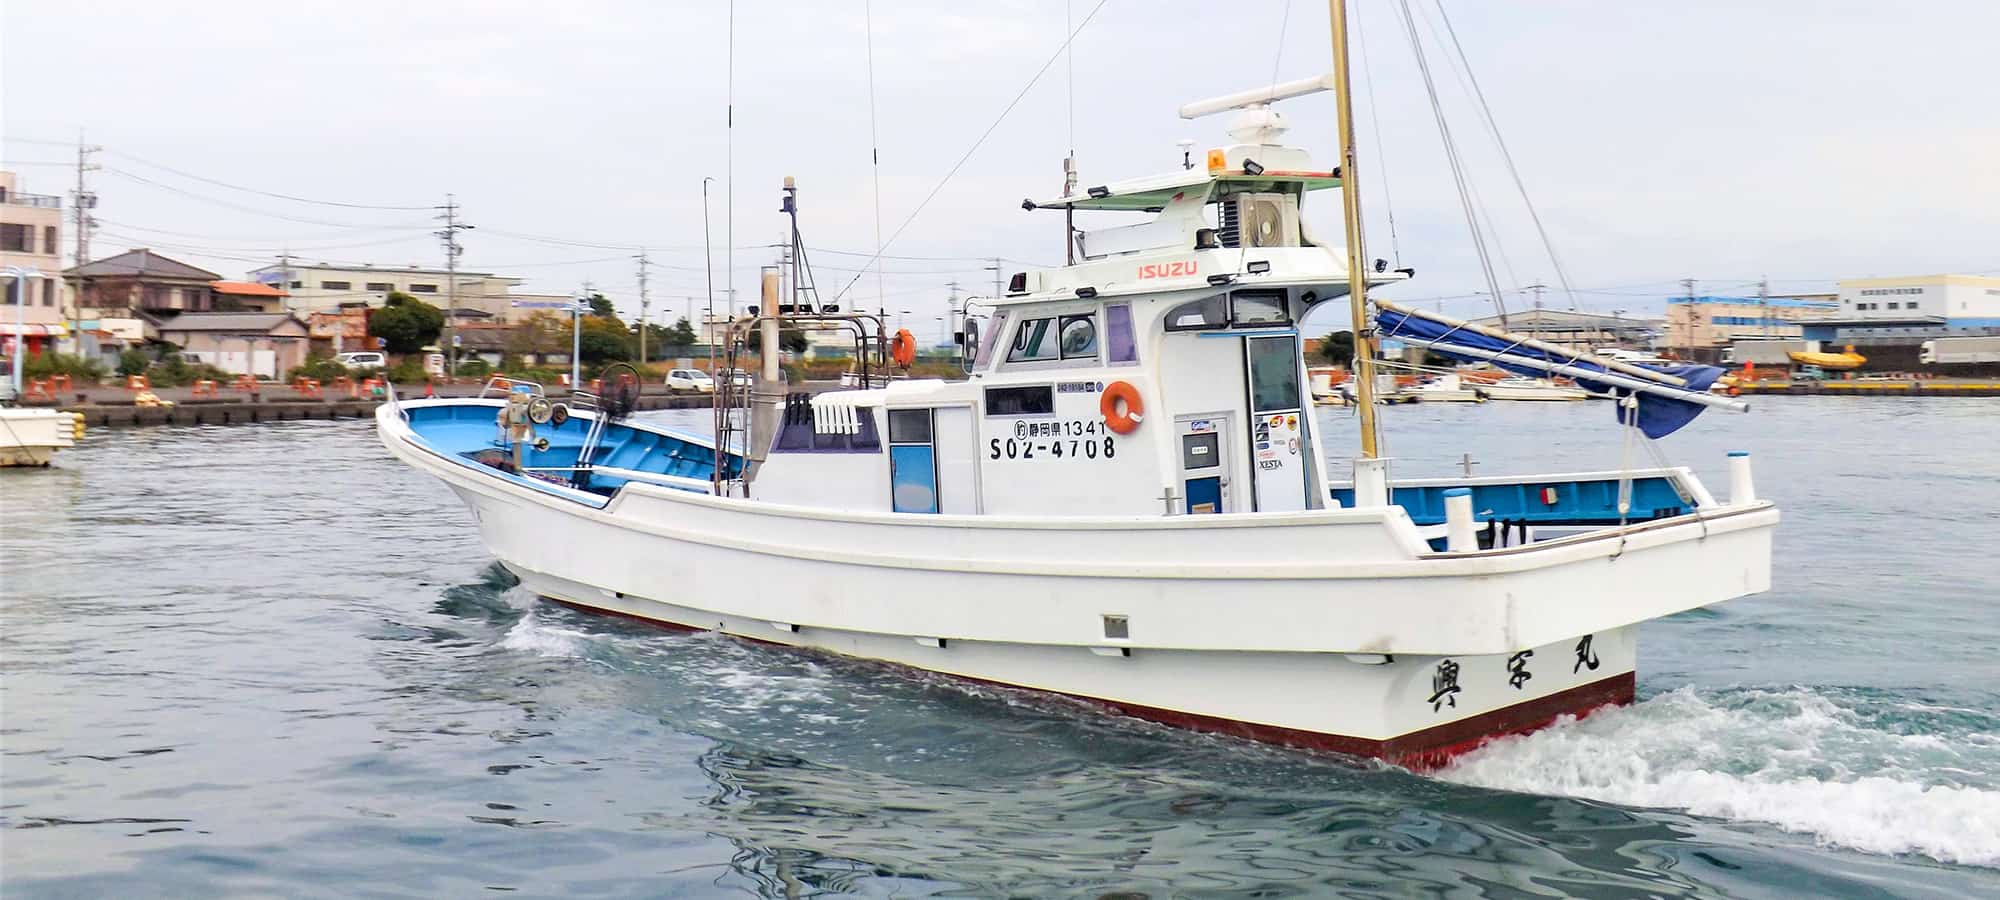 興栄丸 公式サイト 焼津市焼津港の釣り船